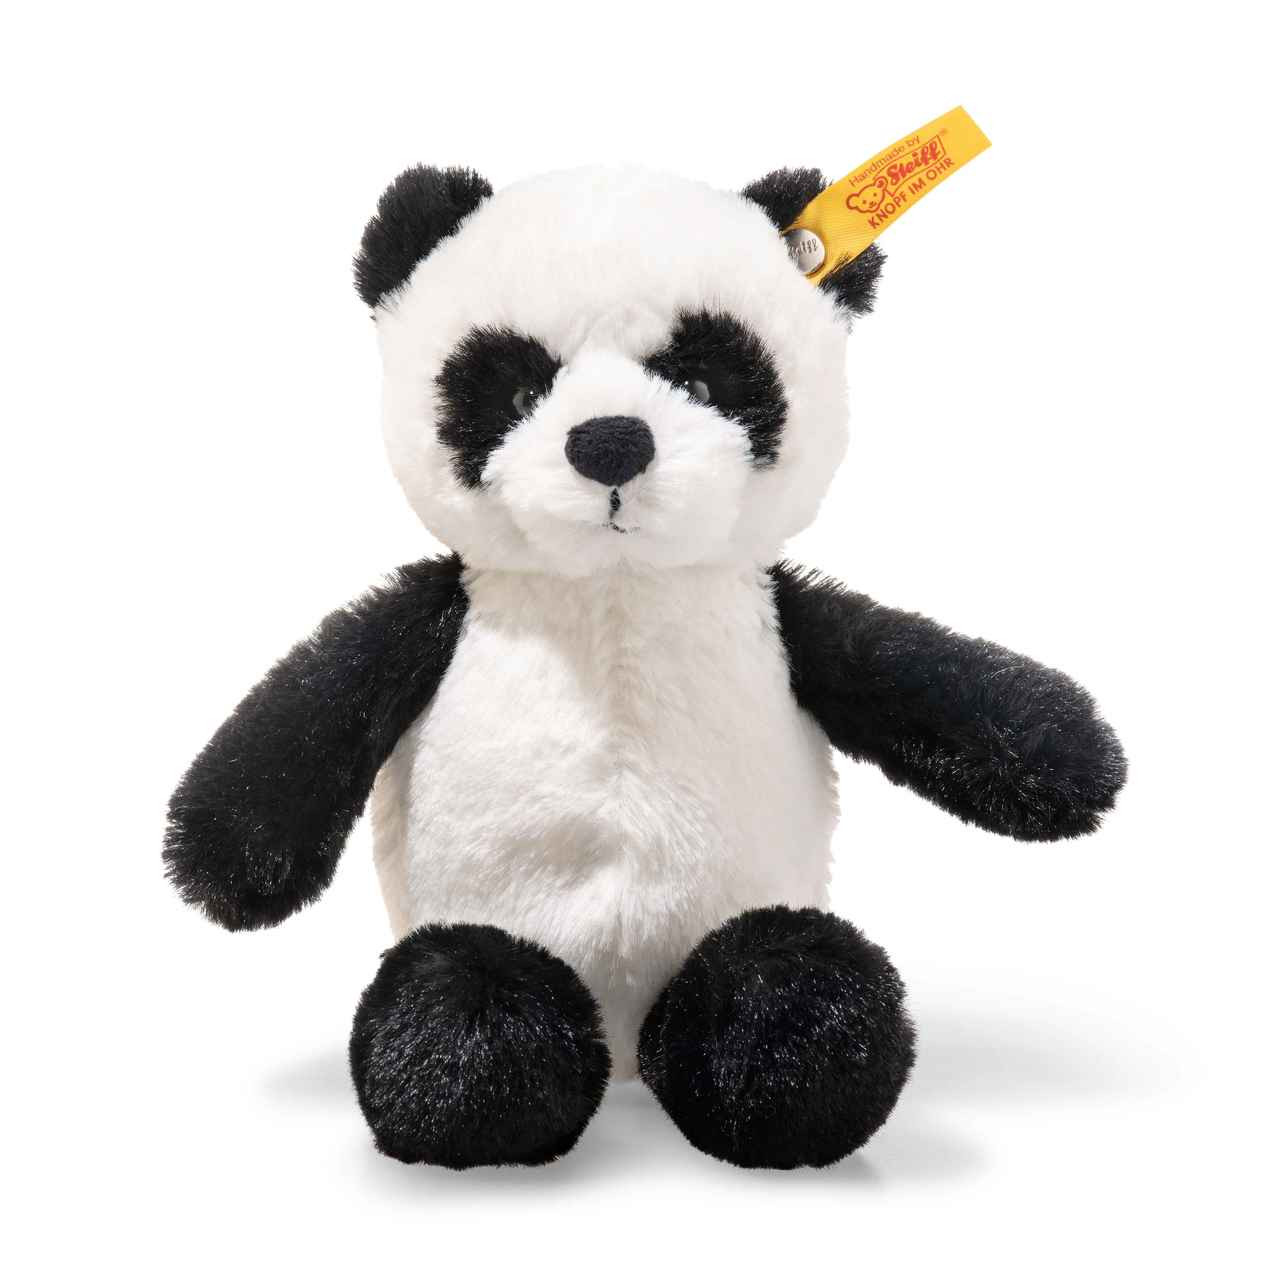 personalised panda teddy